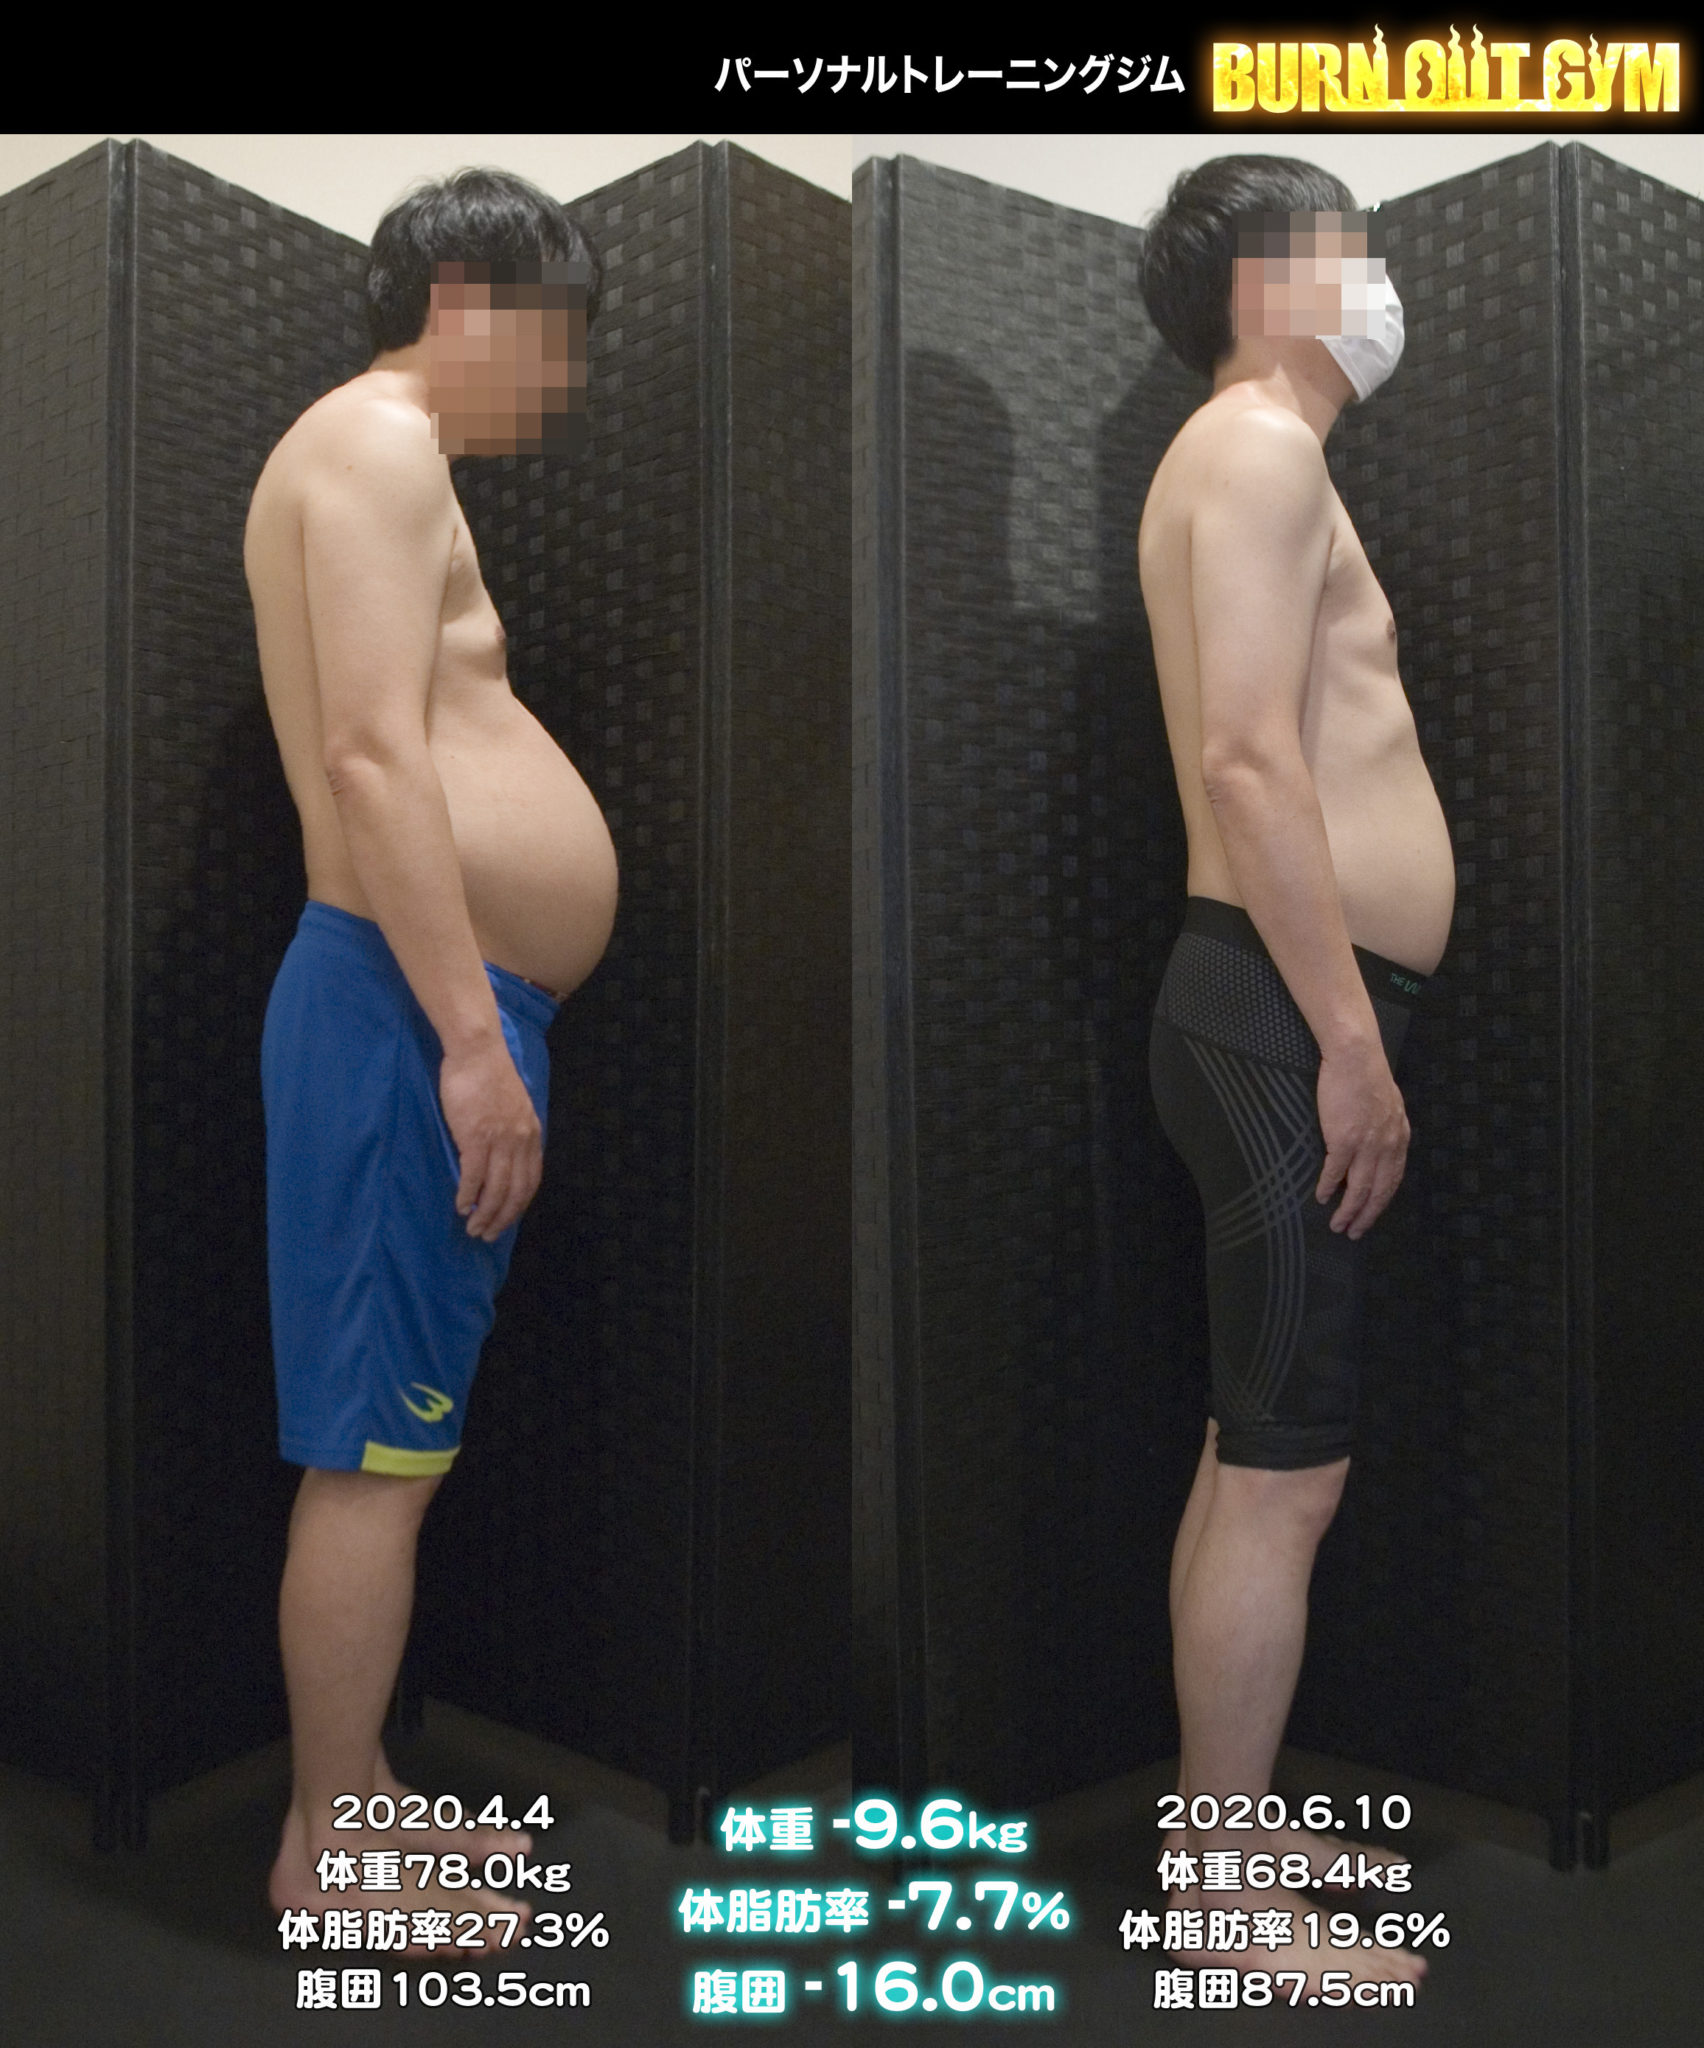 体験者 40代 男性 身長170cm台K・Lさんのダイエット事例 パーソナルトレーニング・ダイエットジム BURN OUT GYM